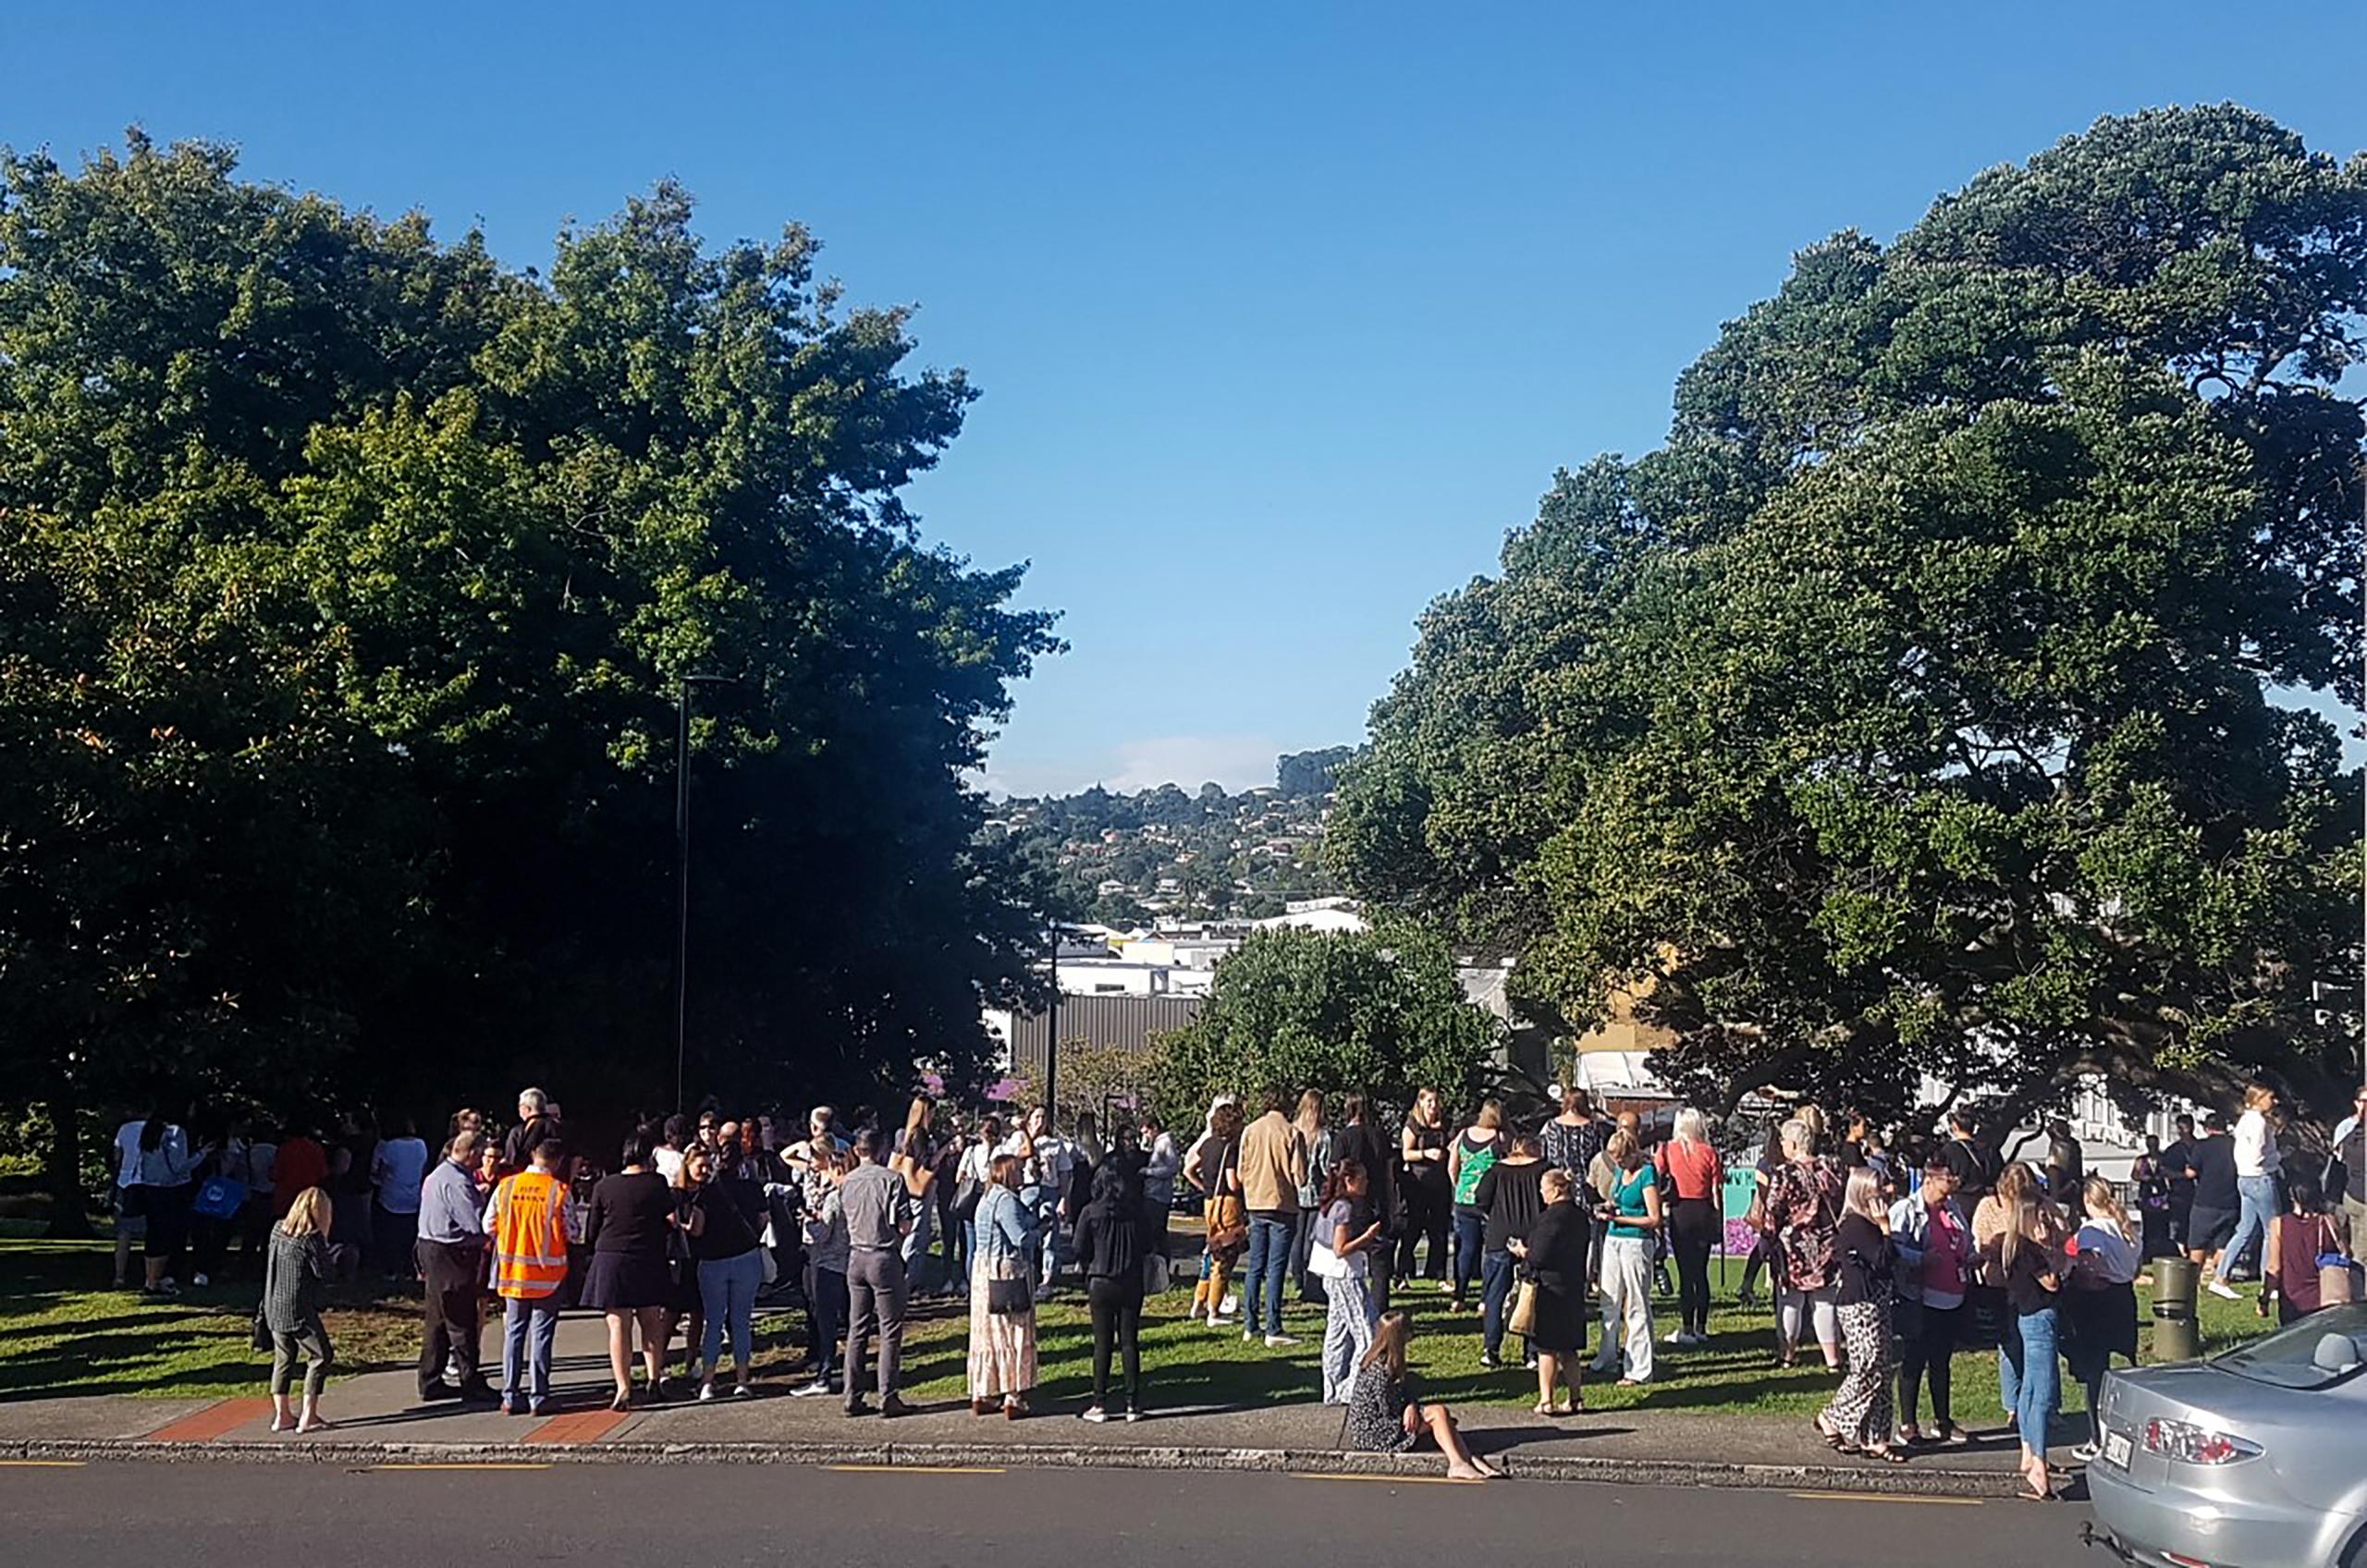 Personas se reúnen en terreno elevado después de que se emitió una alerta de tsunami el viernes 5 de marzo de 2021, en Whangarei, Nueva Zelanda.